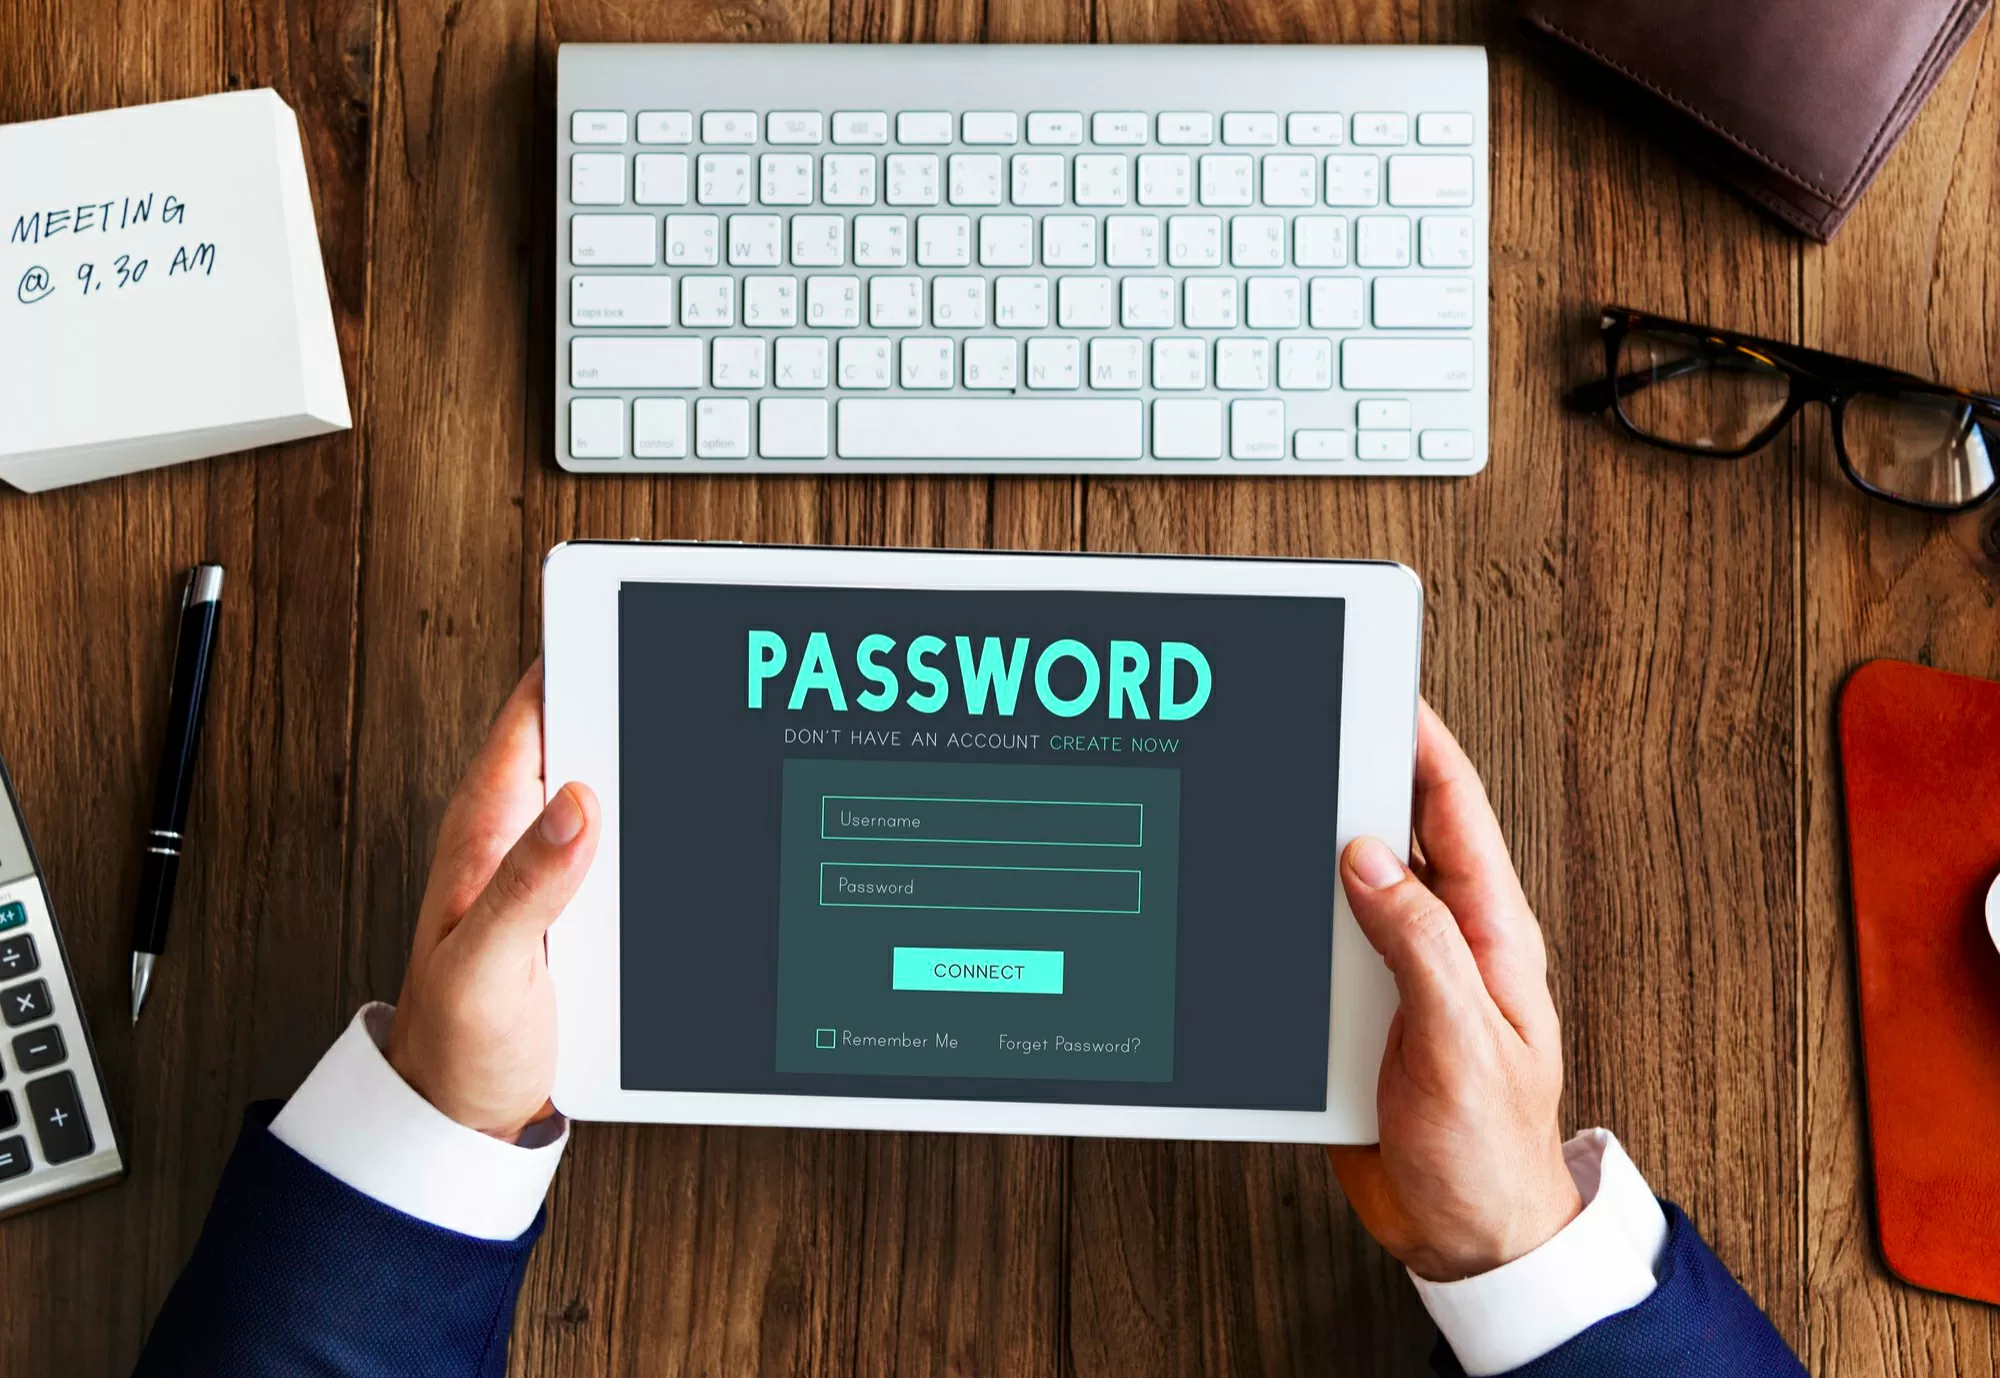 Password siurezza informatica aziende